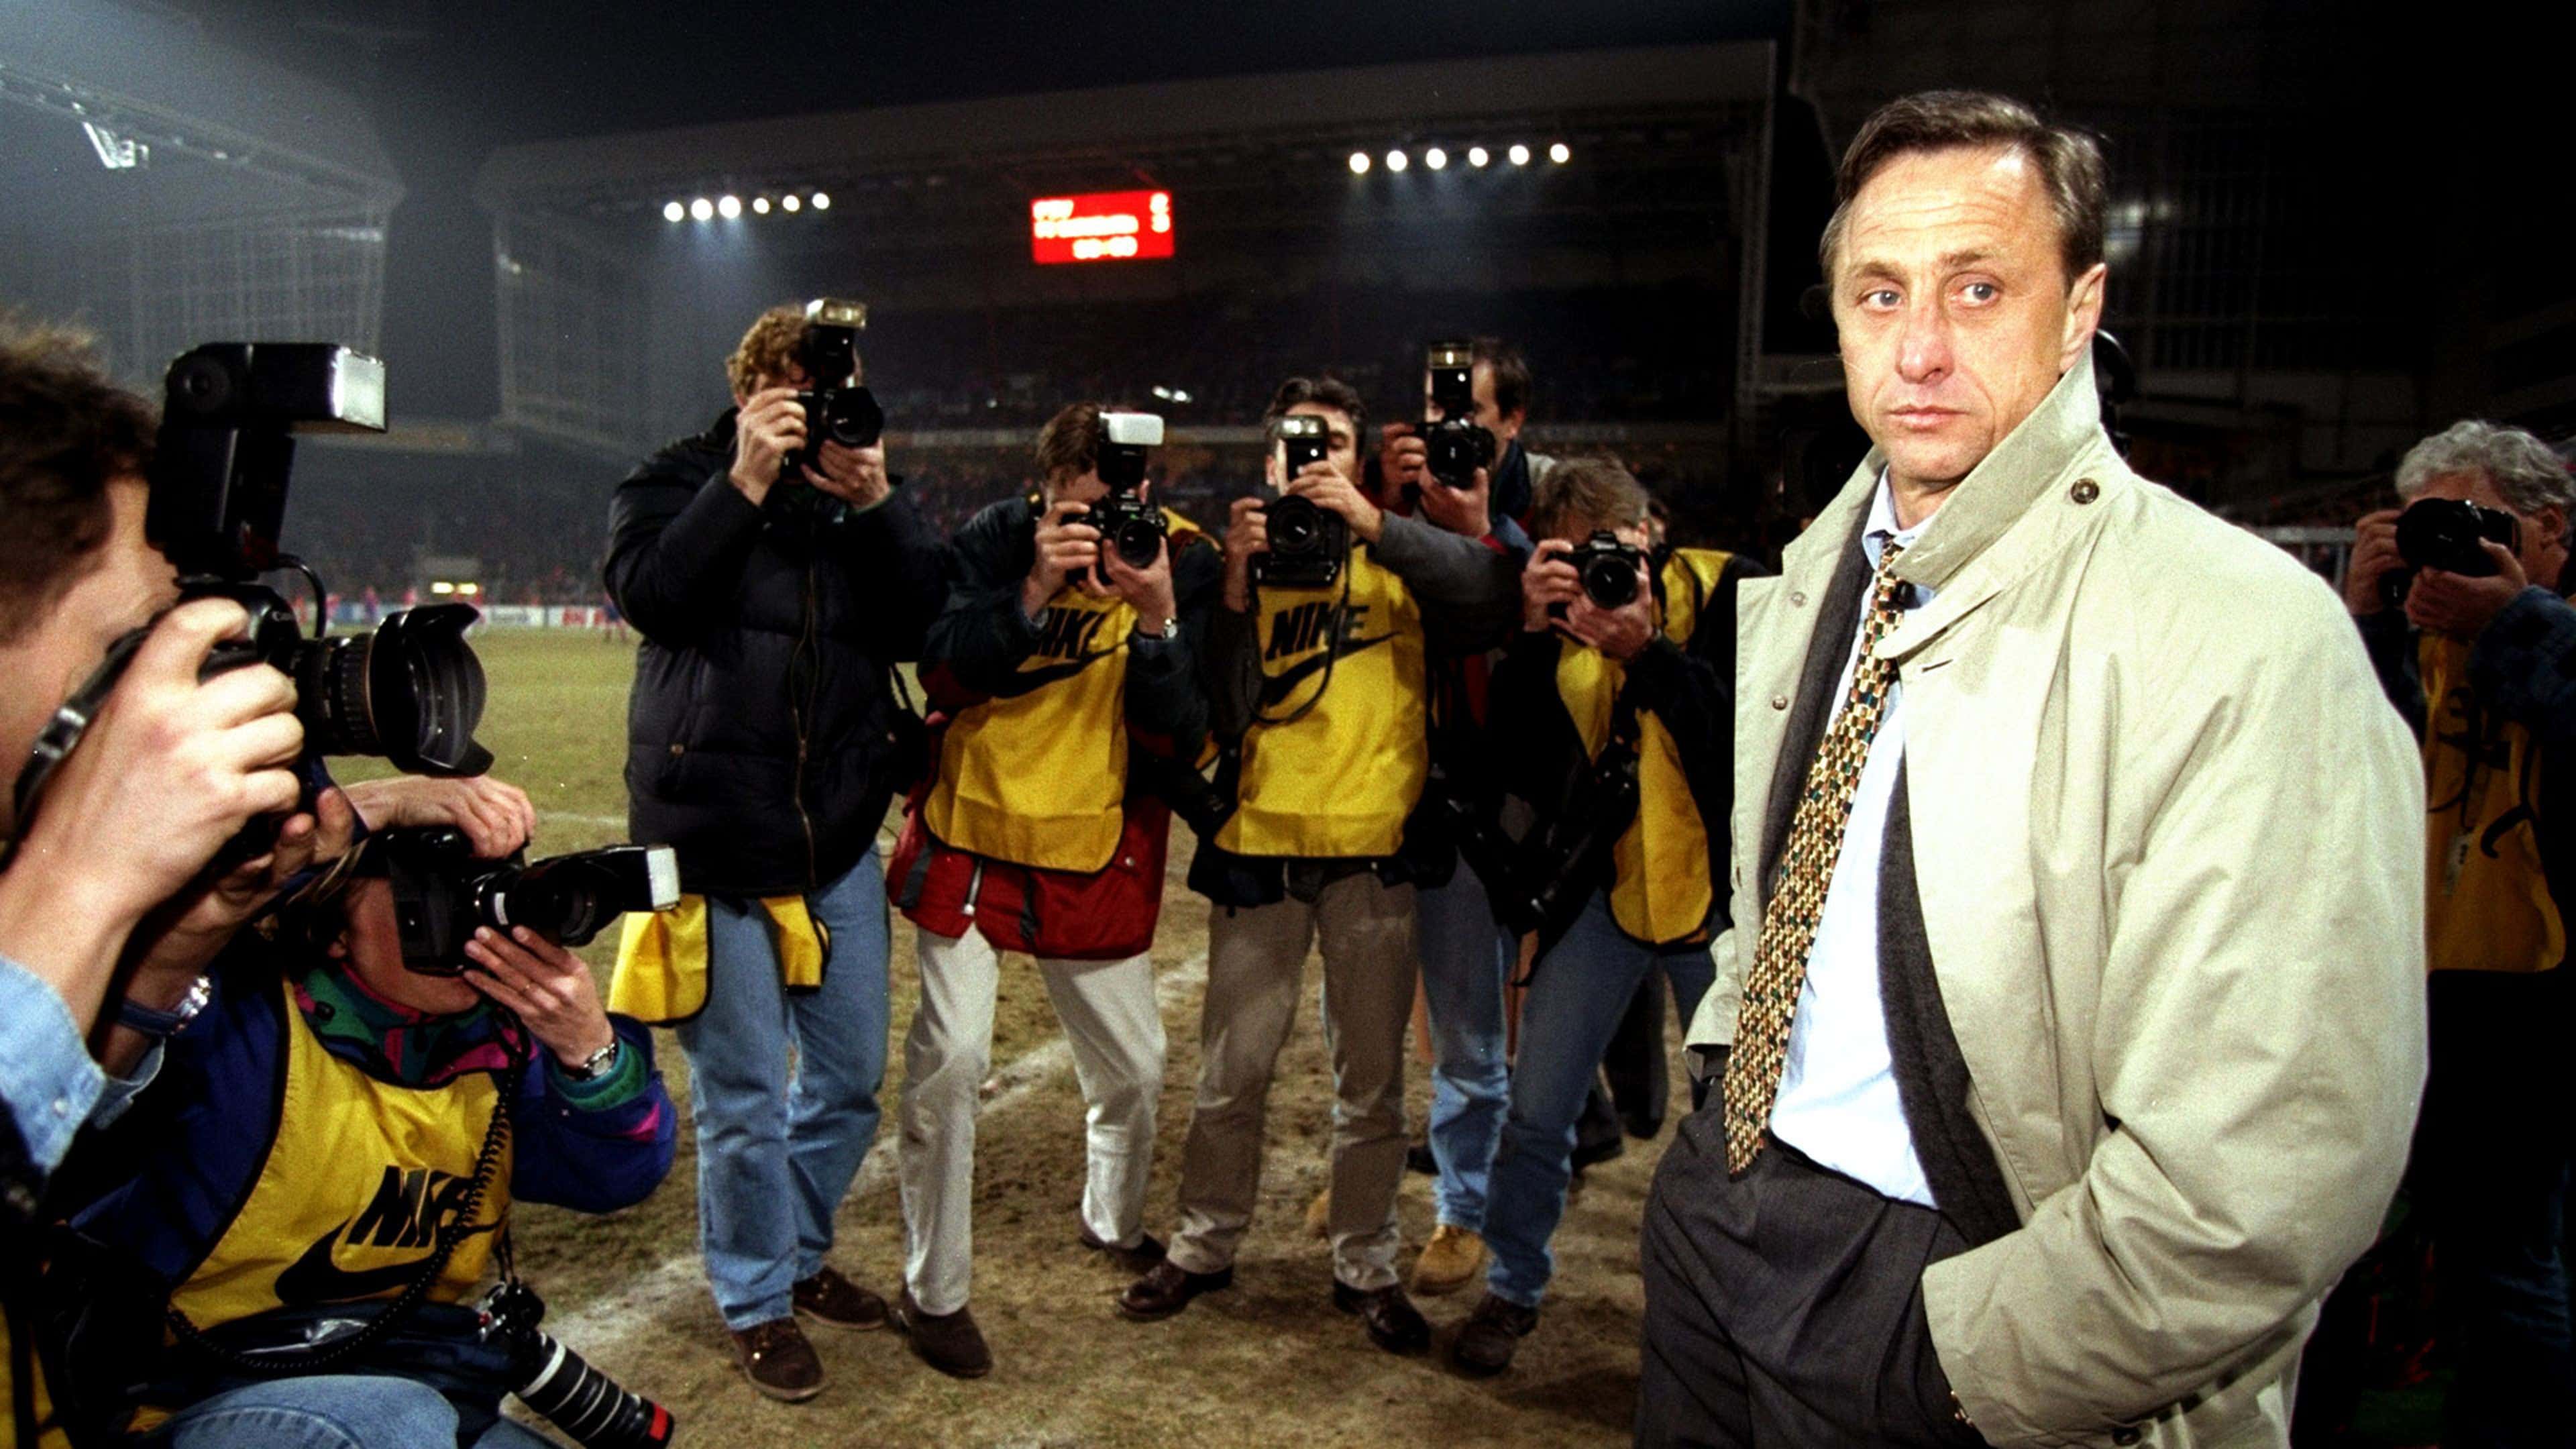 Johan Cruyff Barcelona